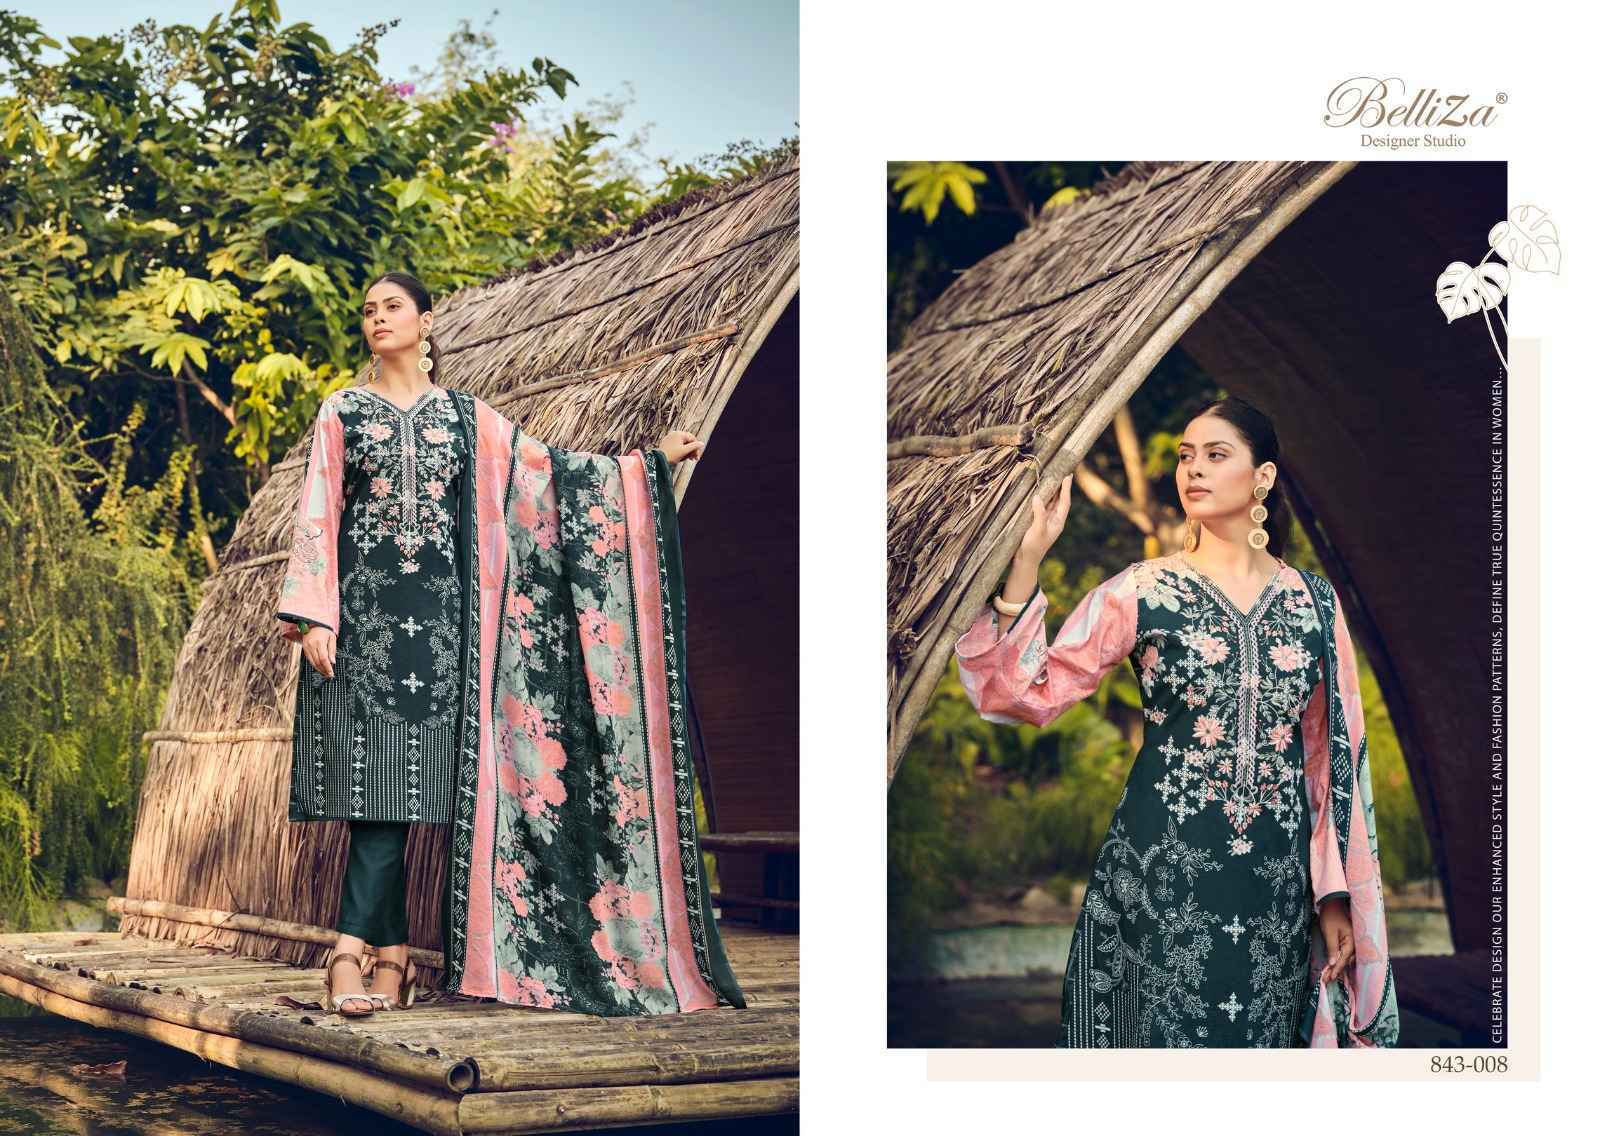 Belliza Nira Vol 20 Cotton Dress Material 10 pcs Catalogue